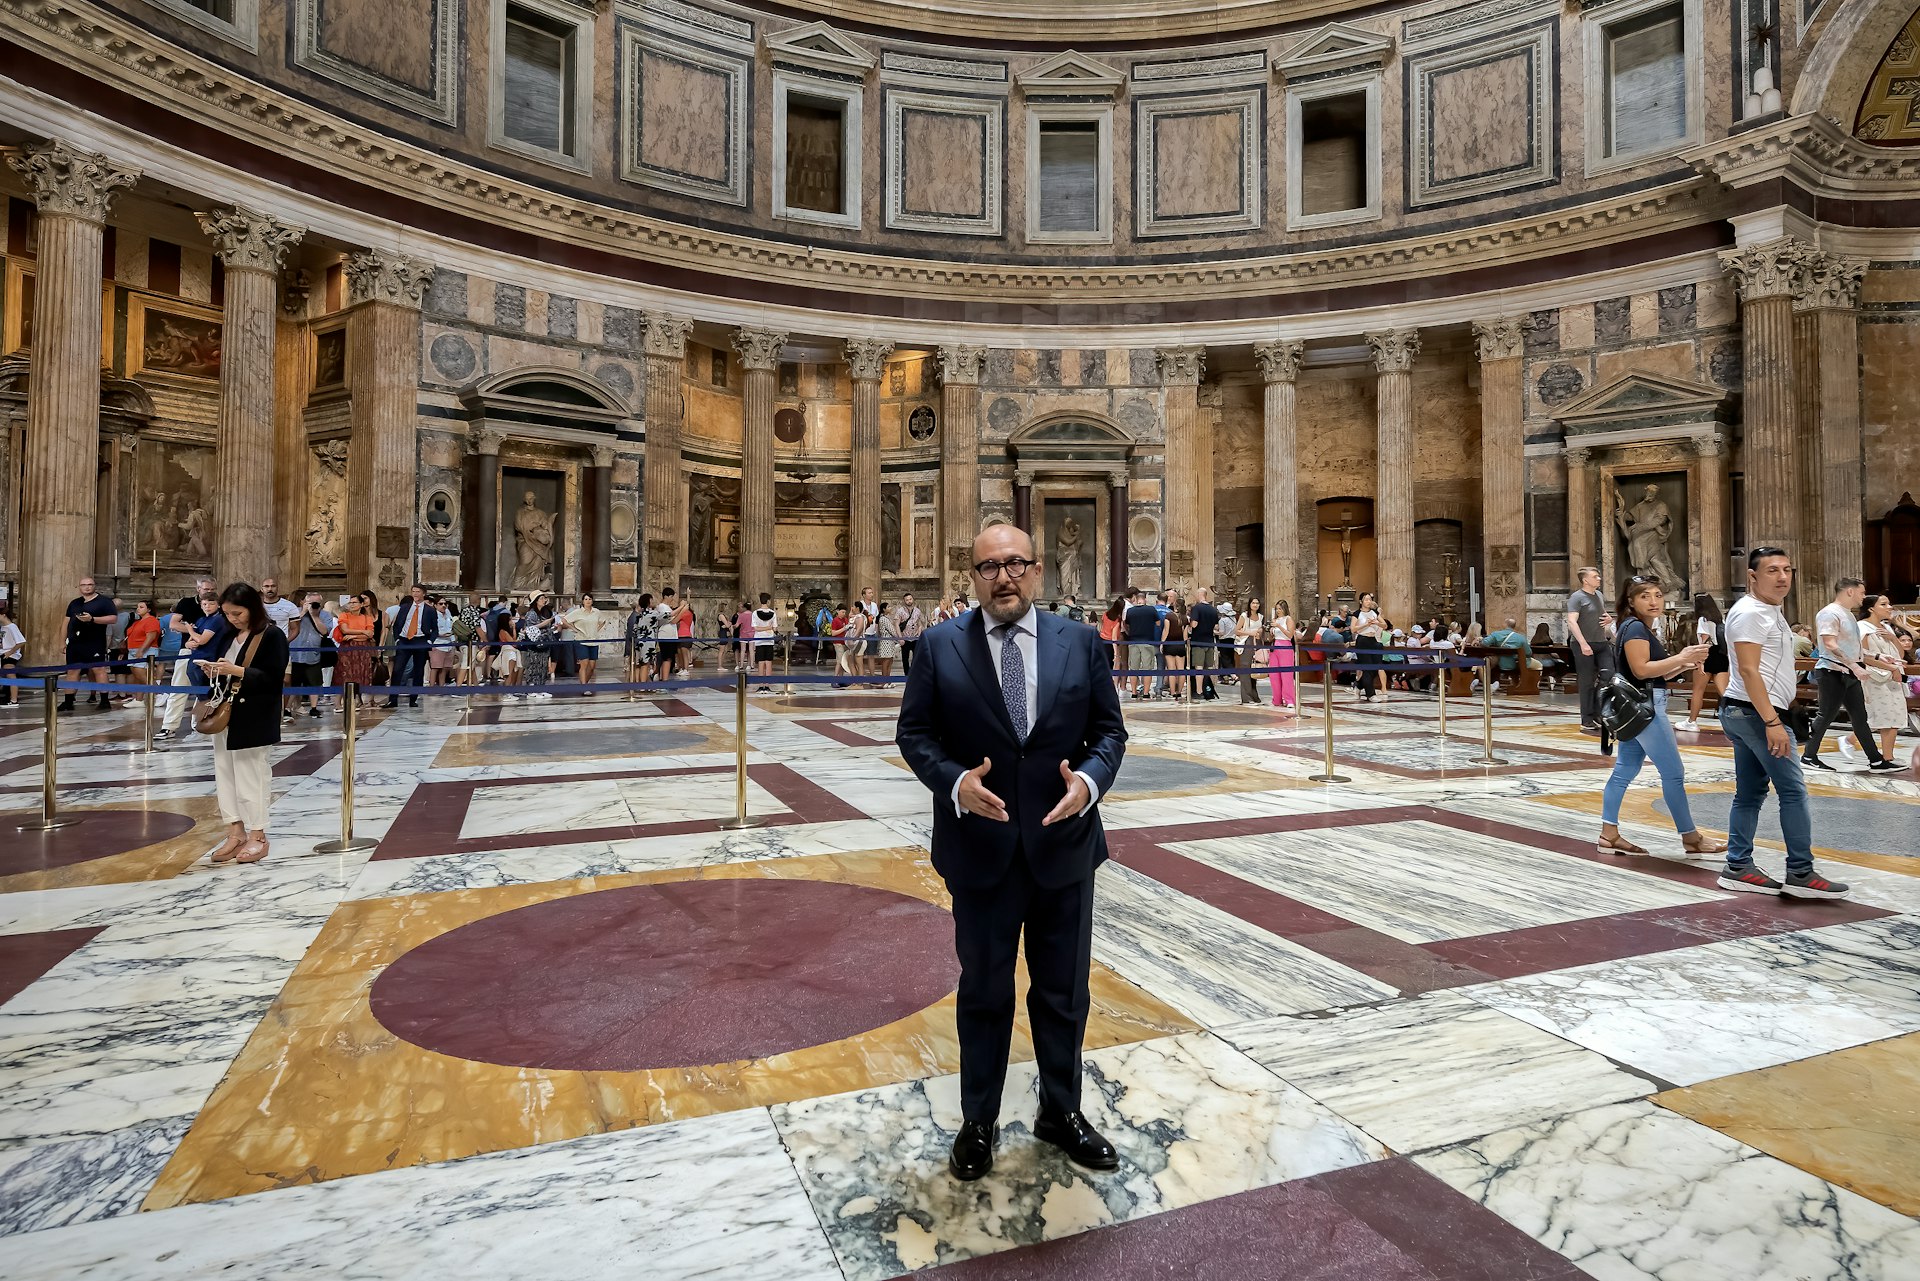  Culture Minister Gennaro Sangiuliano visits the Pantheon - Basilica of Santa Maria ad Martyres